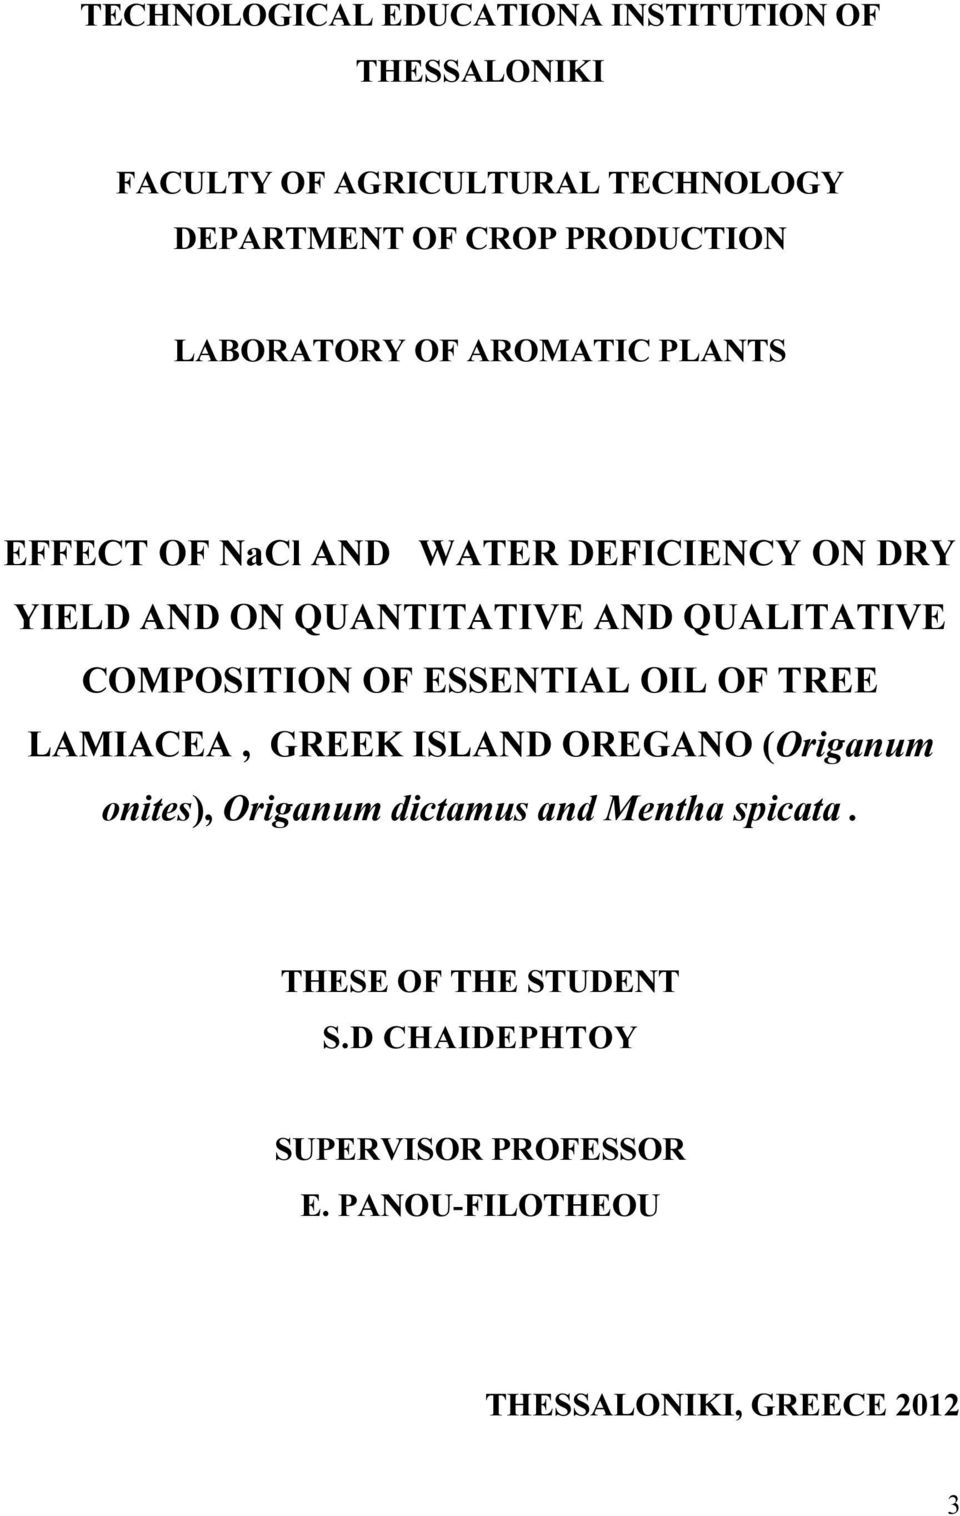 QUALITATIVE COMPOSITION OF ESSENTIAL OIL OF TREE LAMIACEA, GREEK ISLAND OREGANO (Origanum onites), Origanum